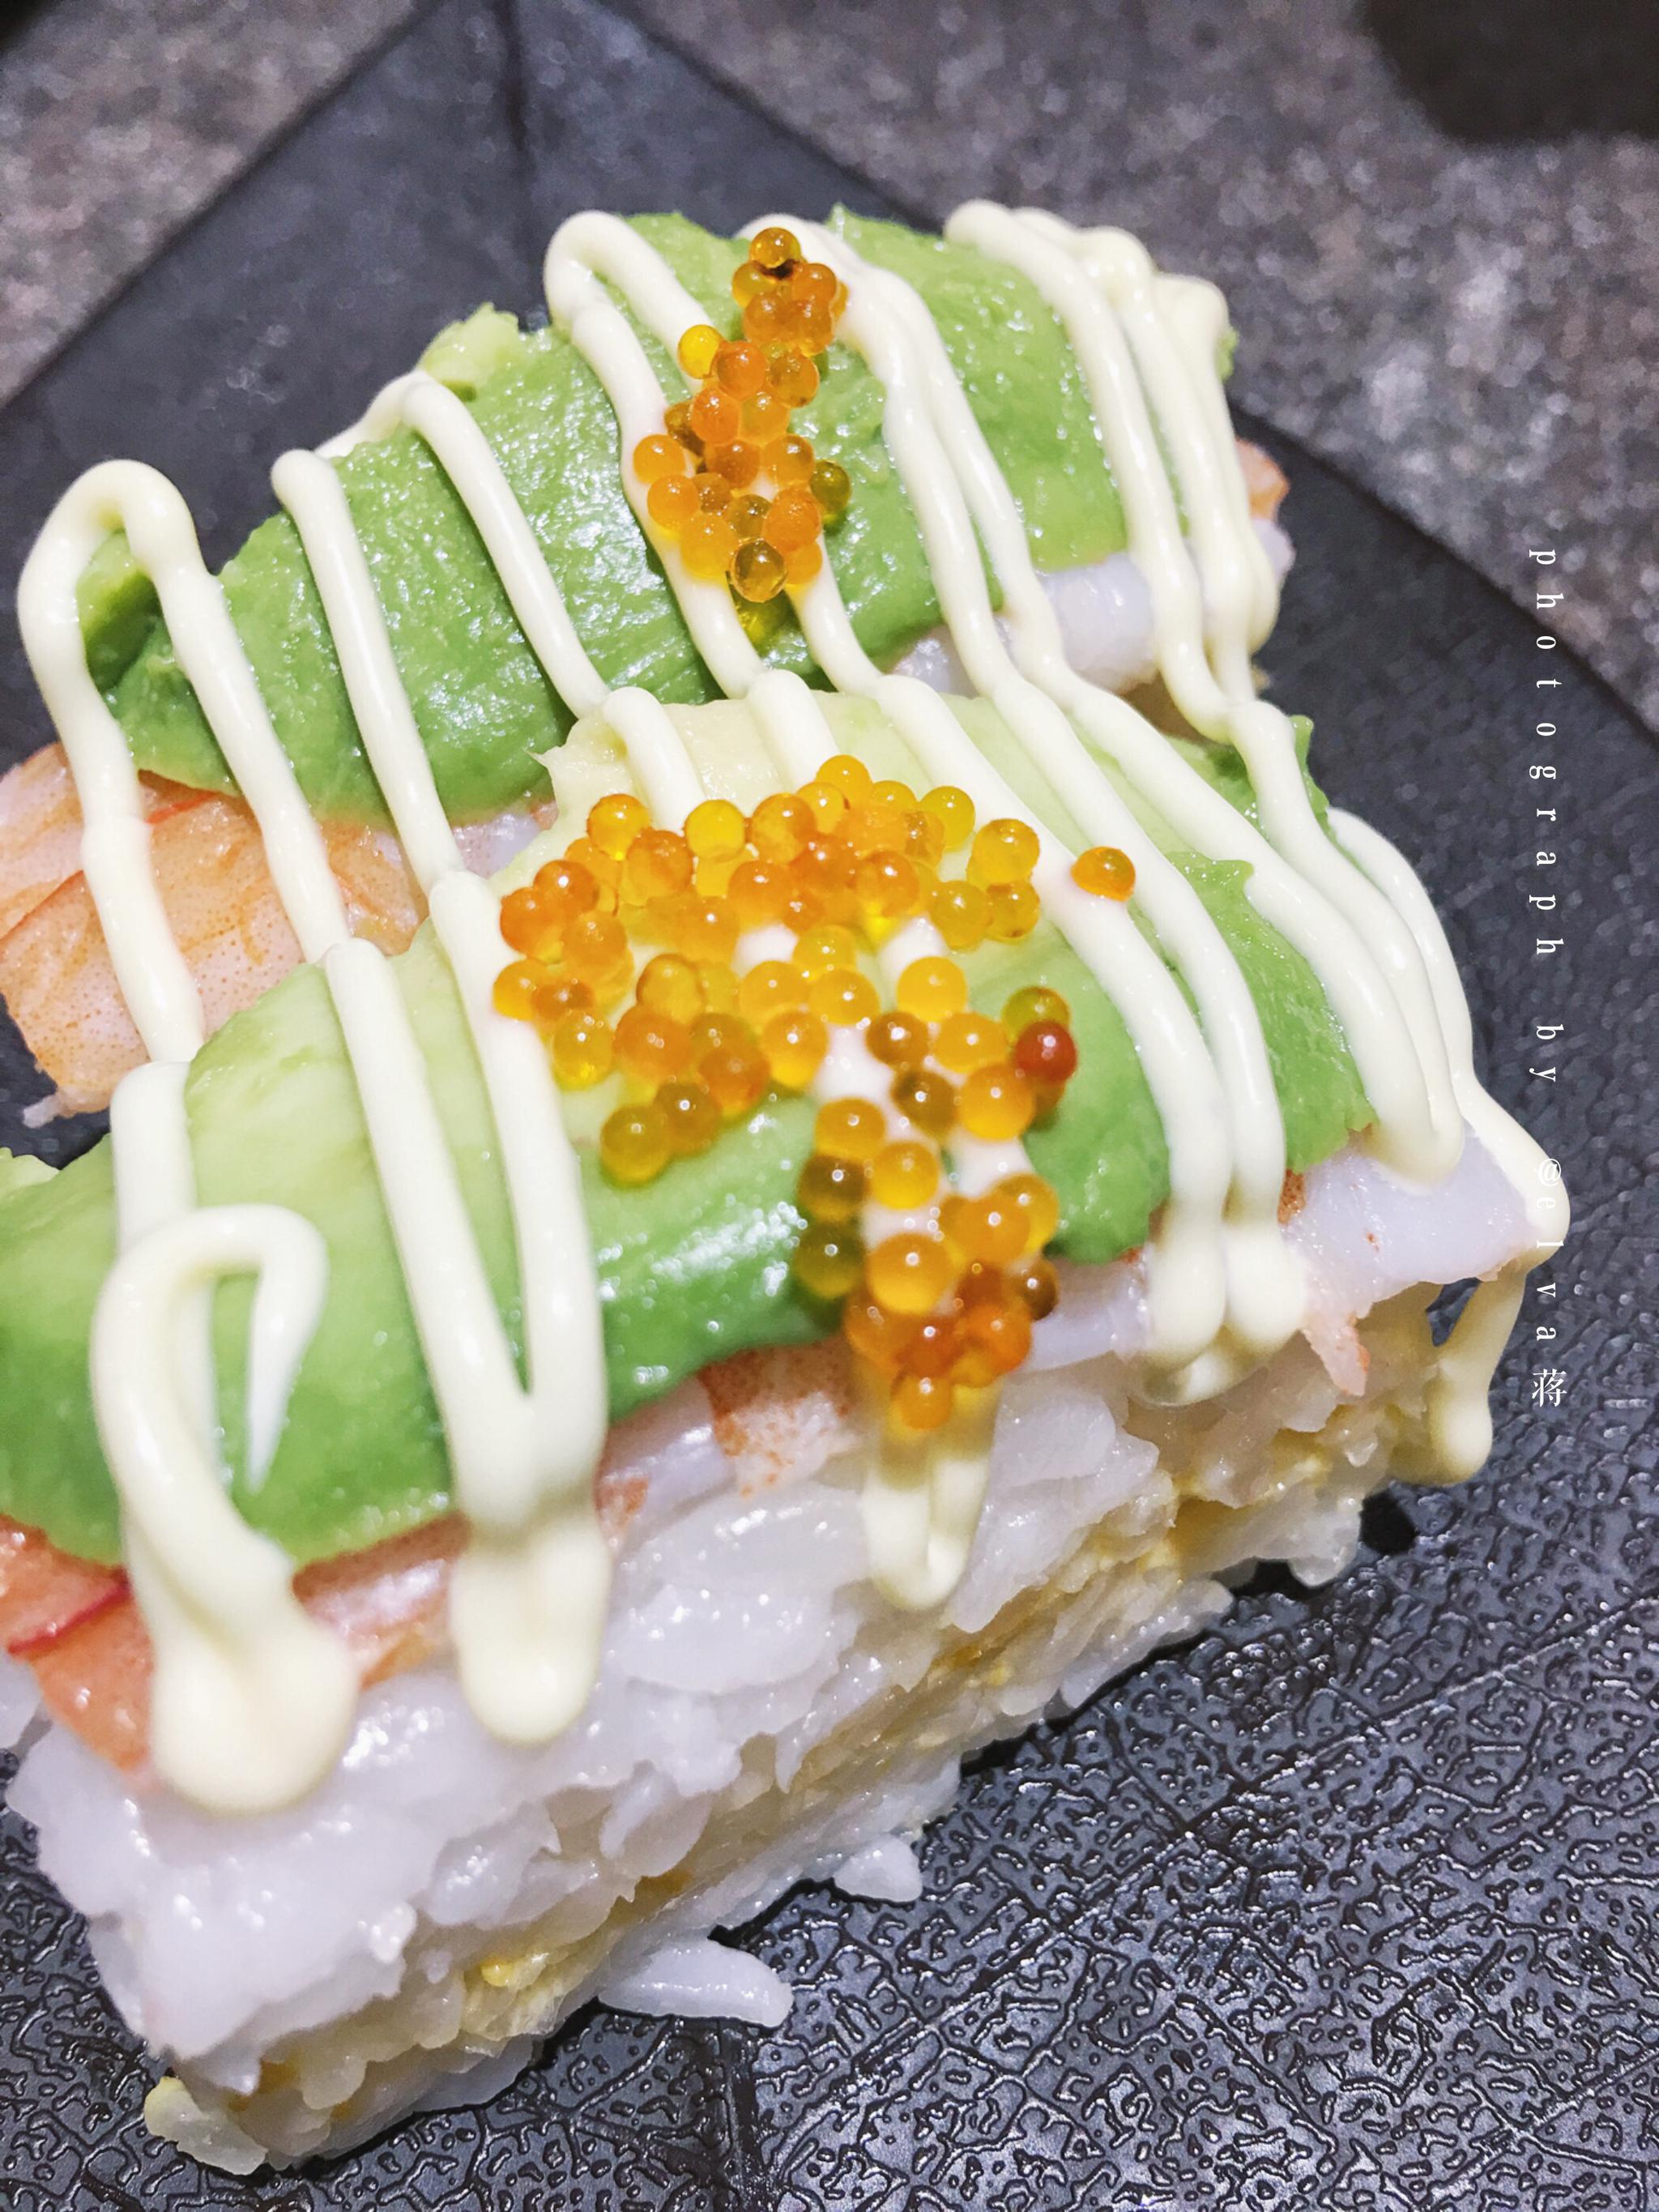 免费照片： 日本菜, 午餐, 虾, 寿司